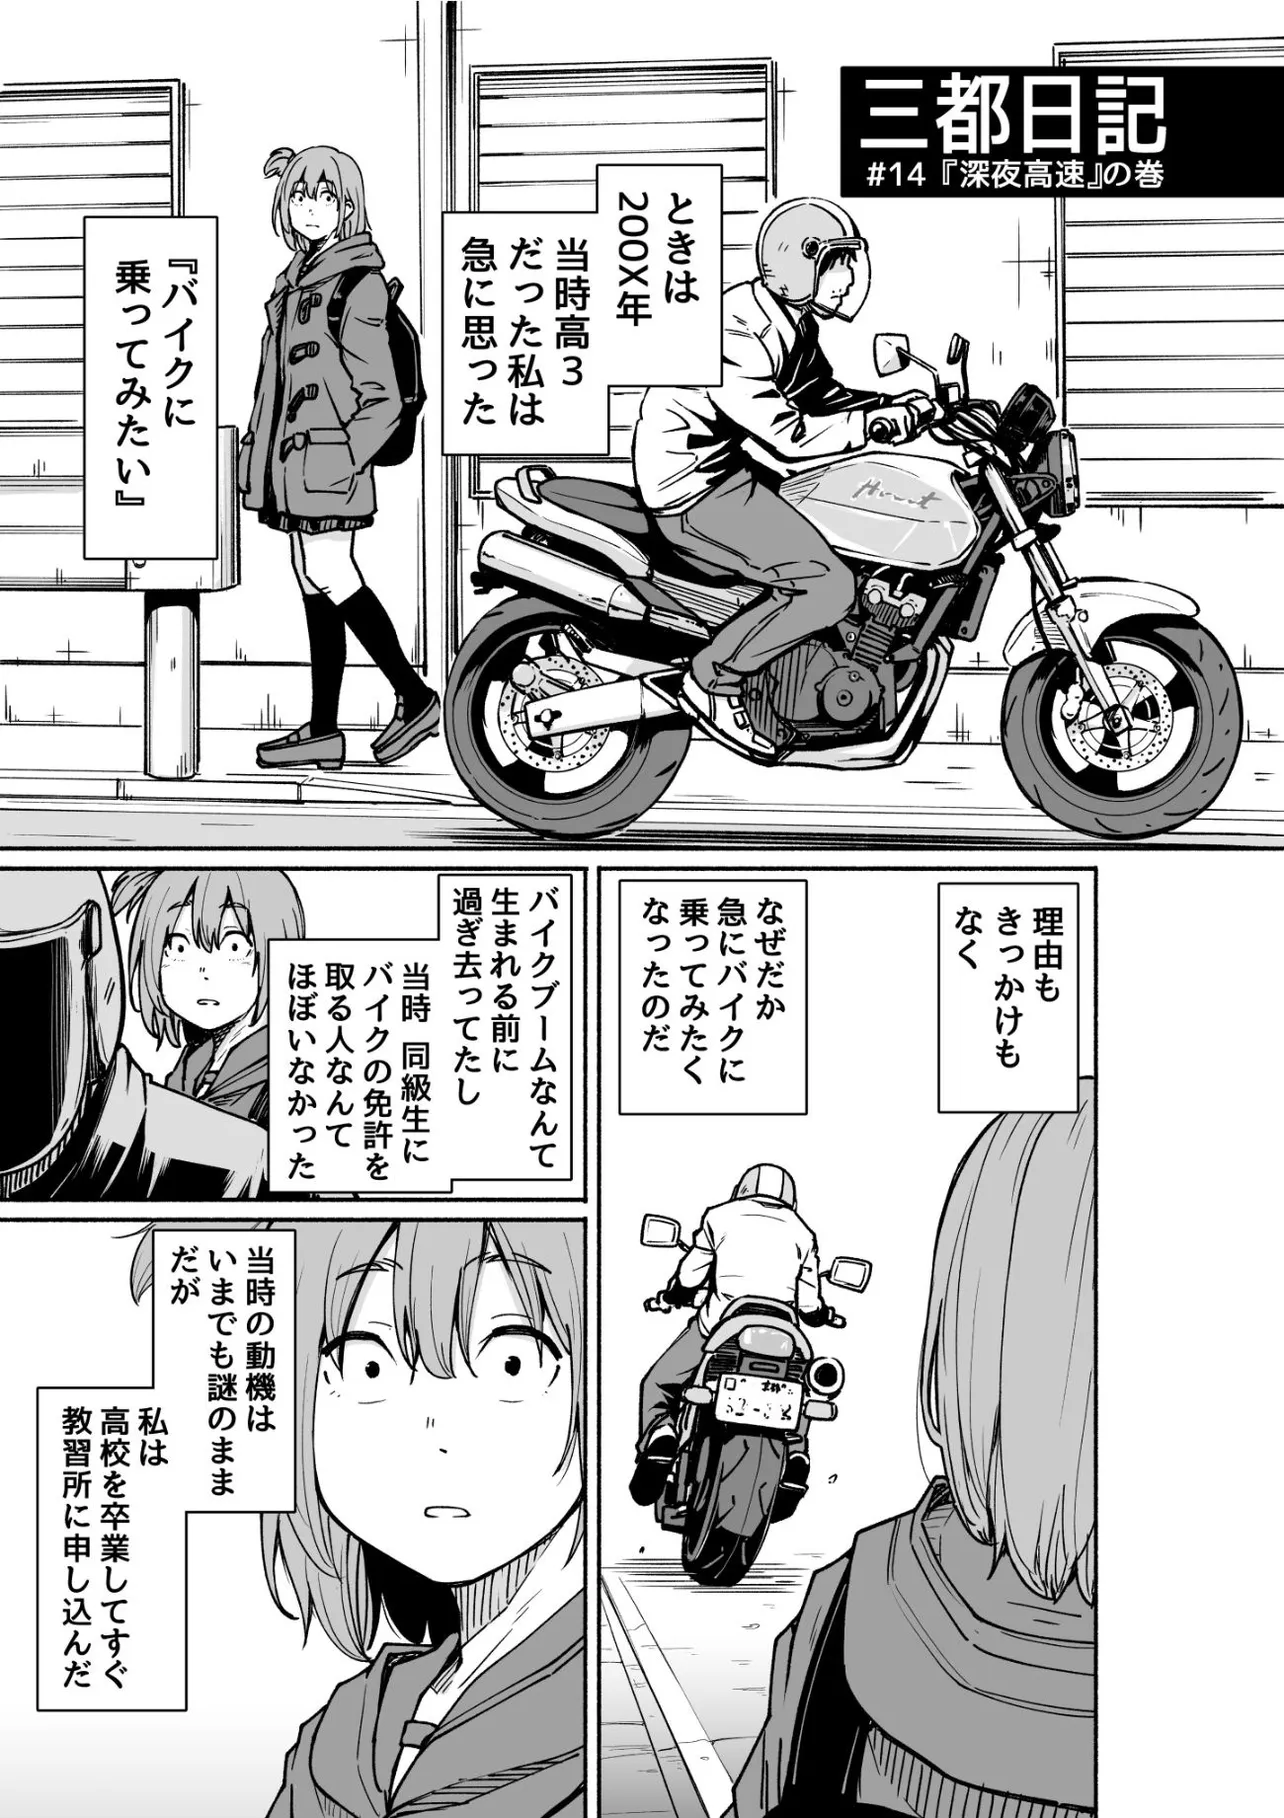 『バイクの話』(1／7)